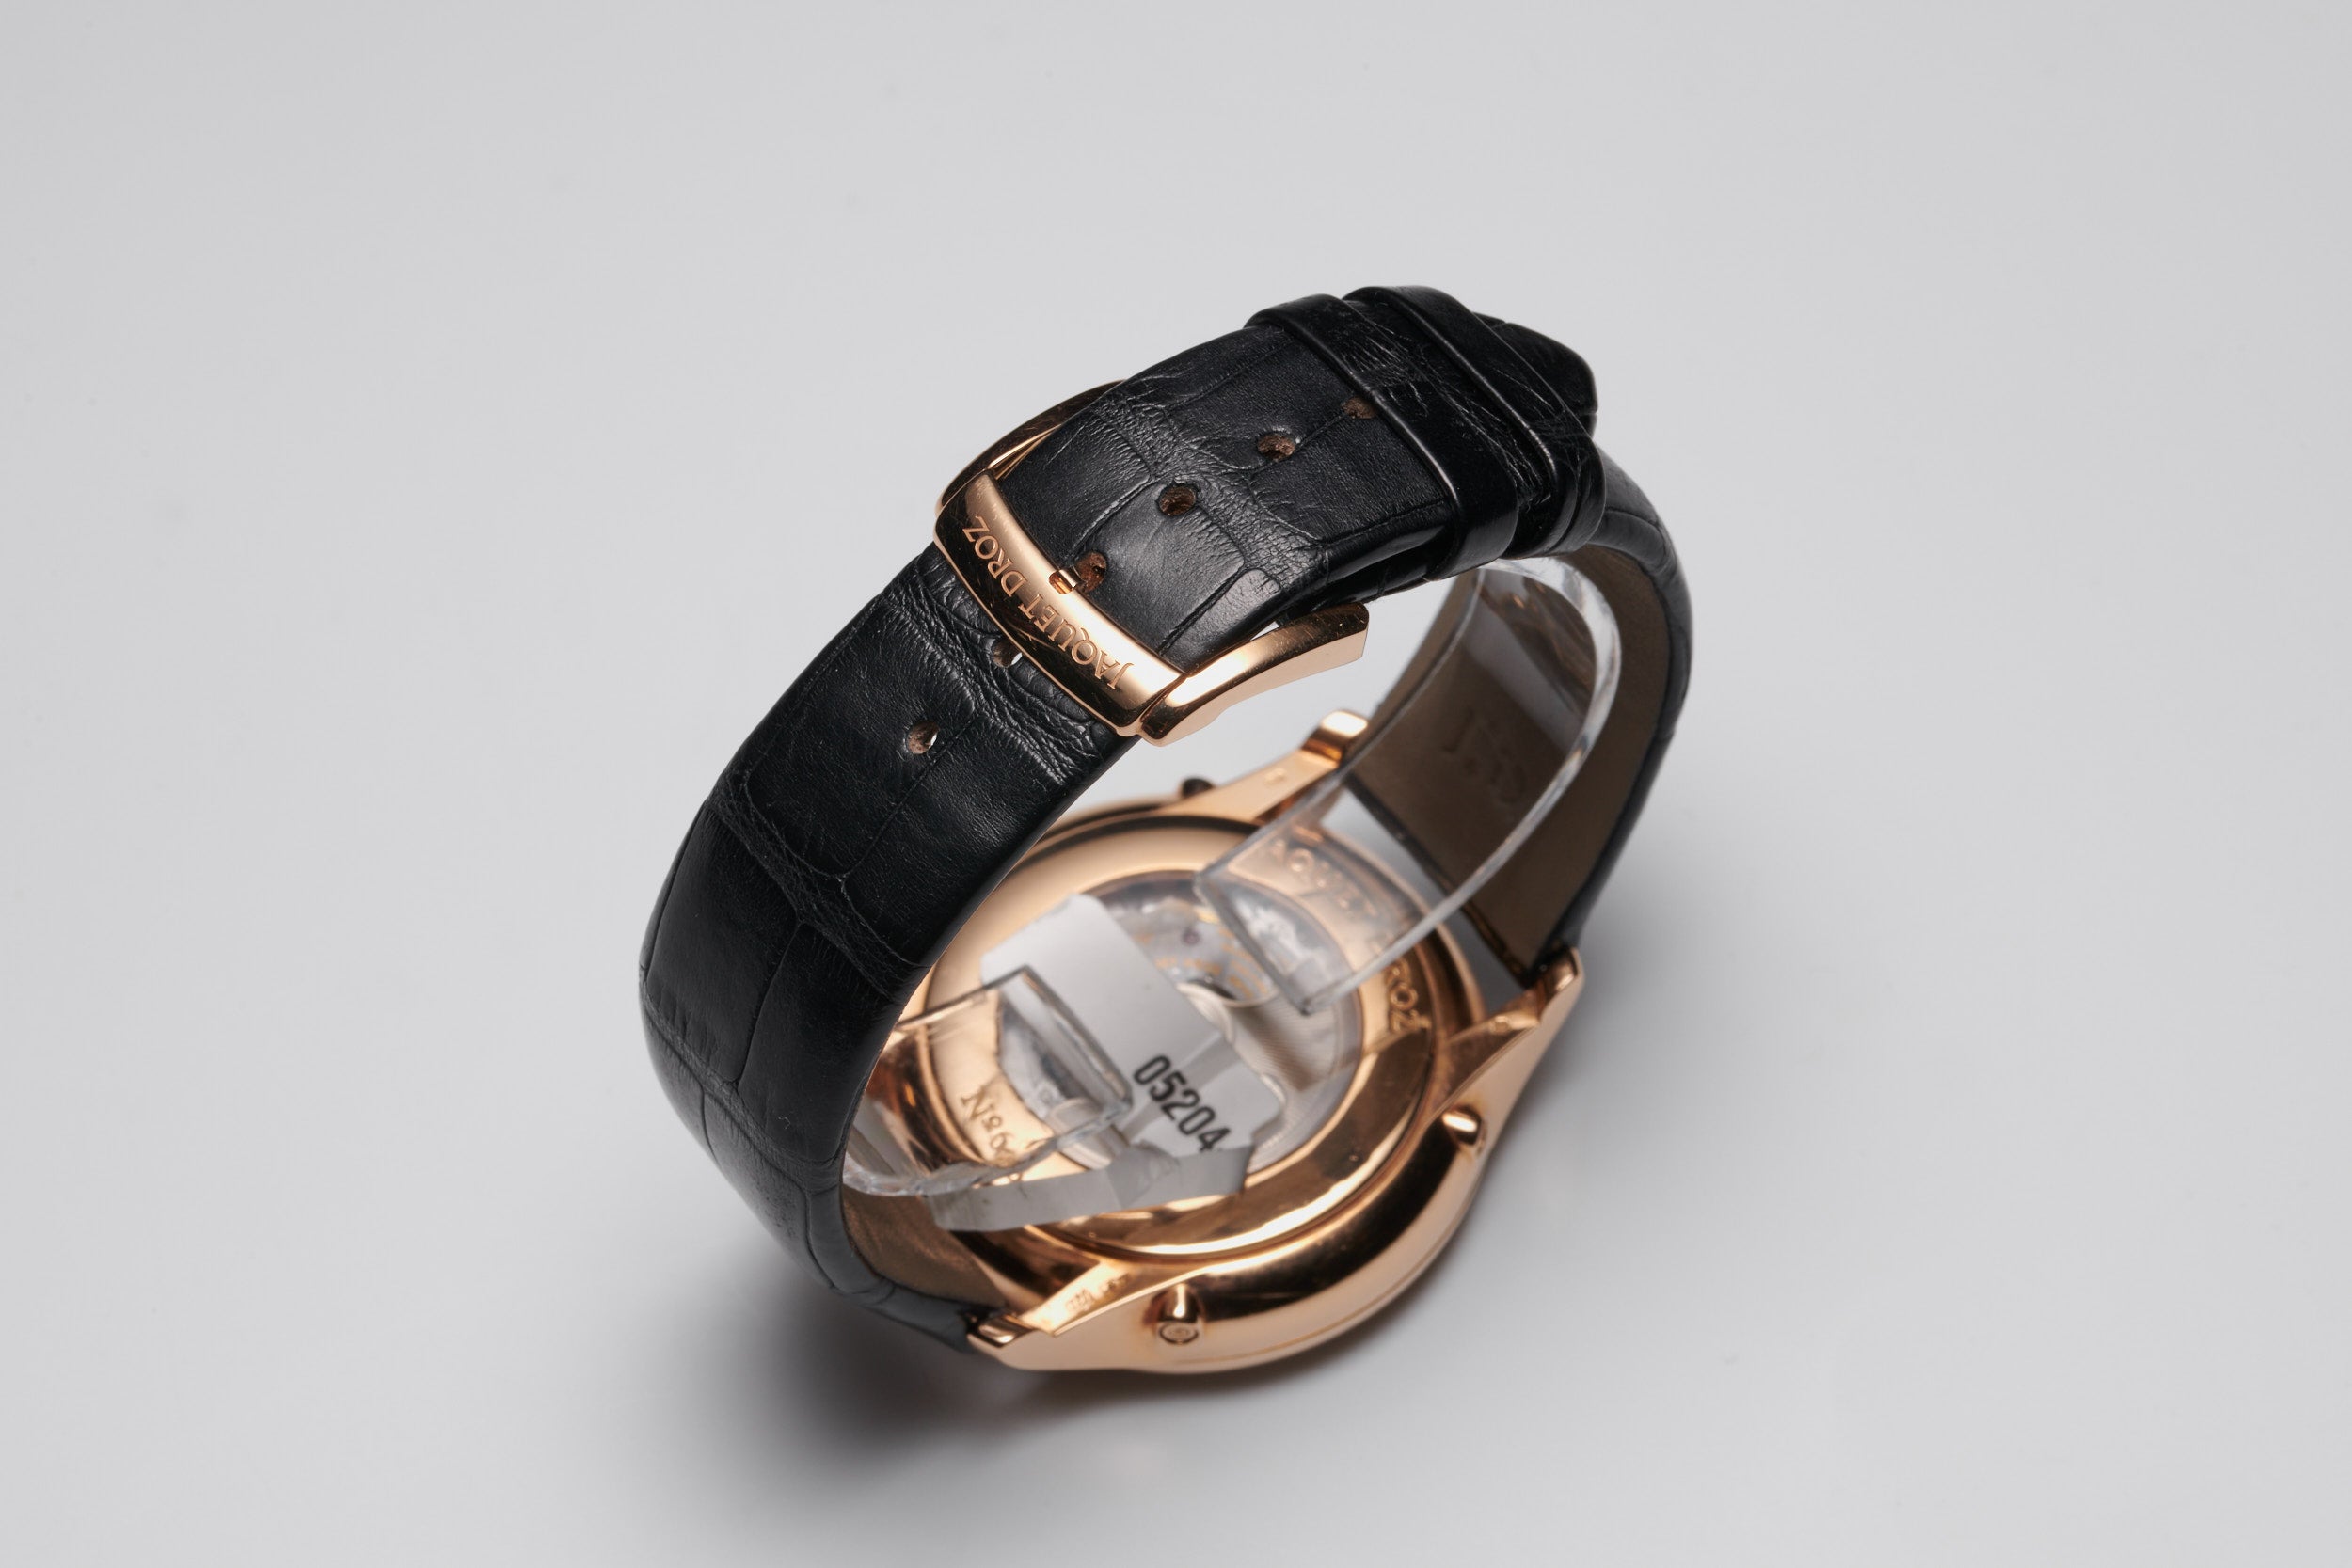 Jaquet Droz Complication Chaux-de-Fonds Perpetual Calendar 18K Rose Gold Men's  Watch